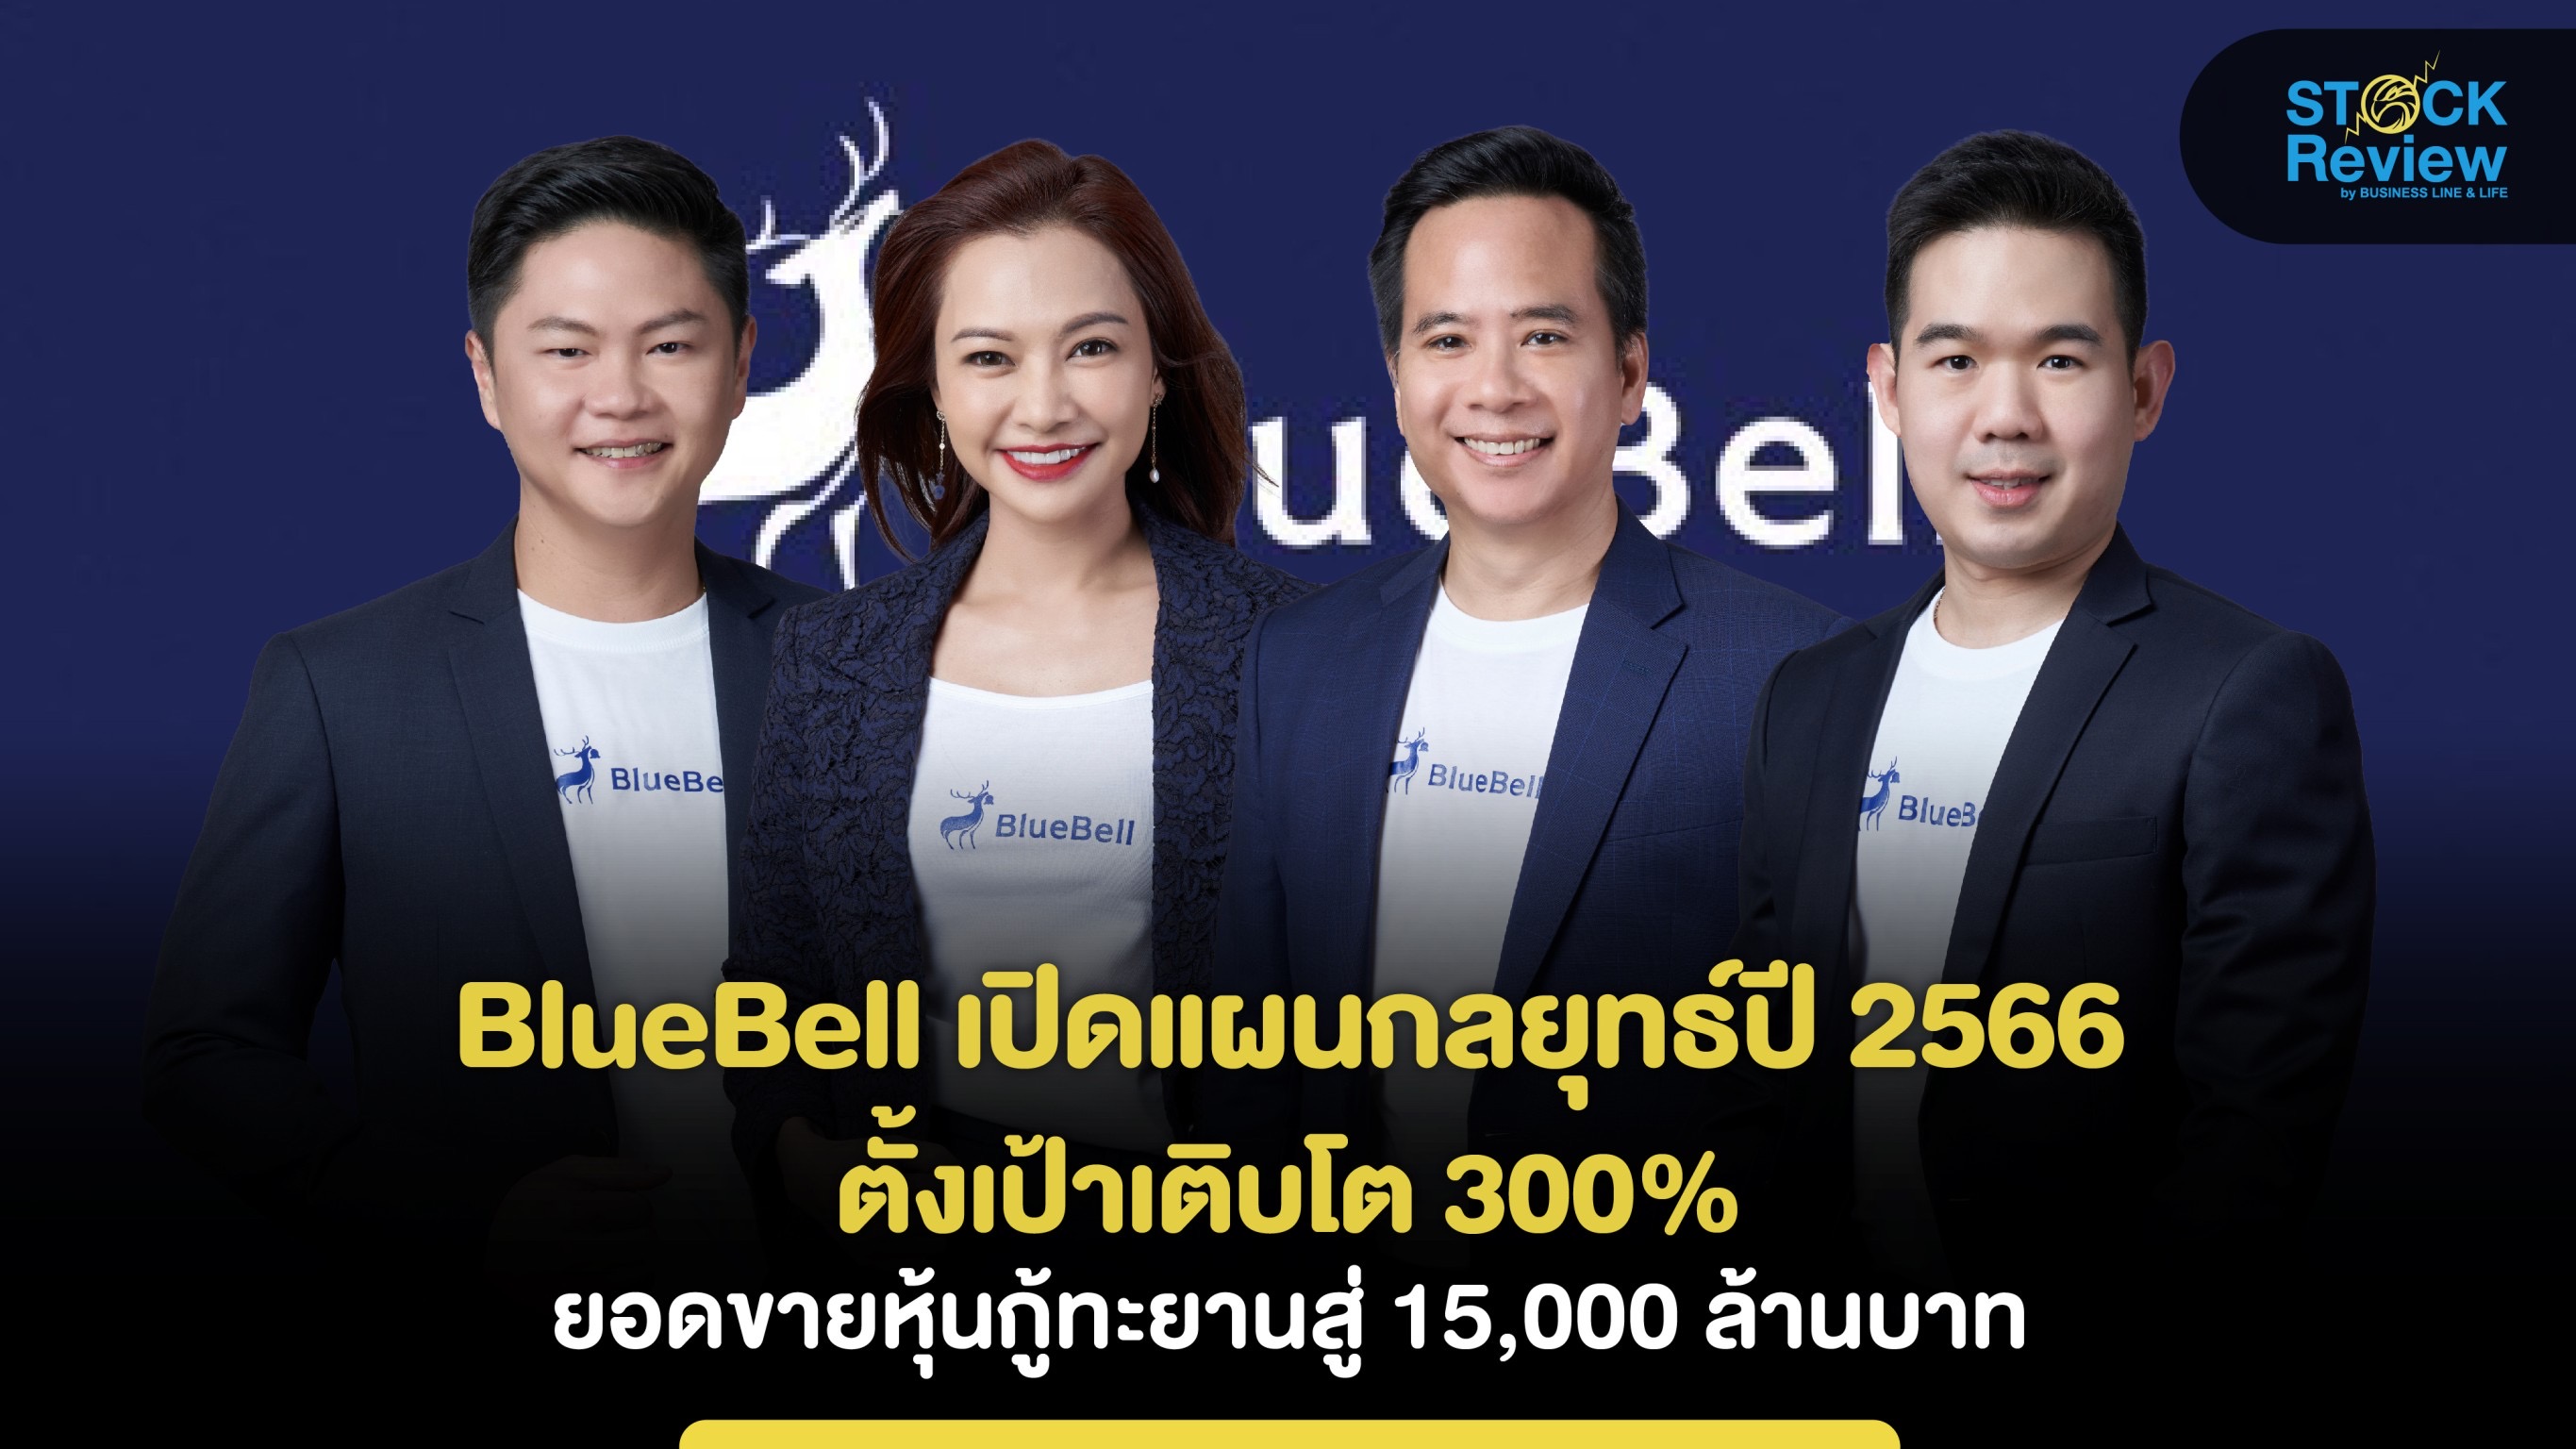 BlueBell เปิดแผนกลยุทธ์ปี 2566 ตั้งเป้าโต 300% ยอดขายหุ้นกู้ทะลุ 1.5 หมื่นล้านบาท